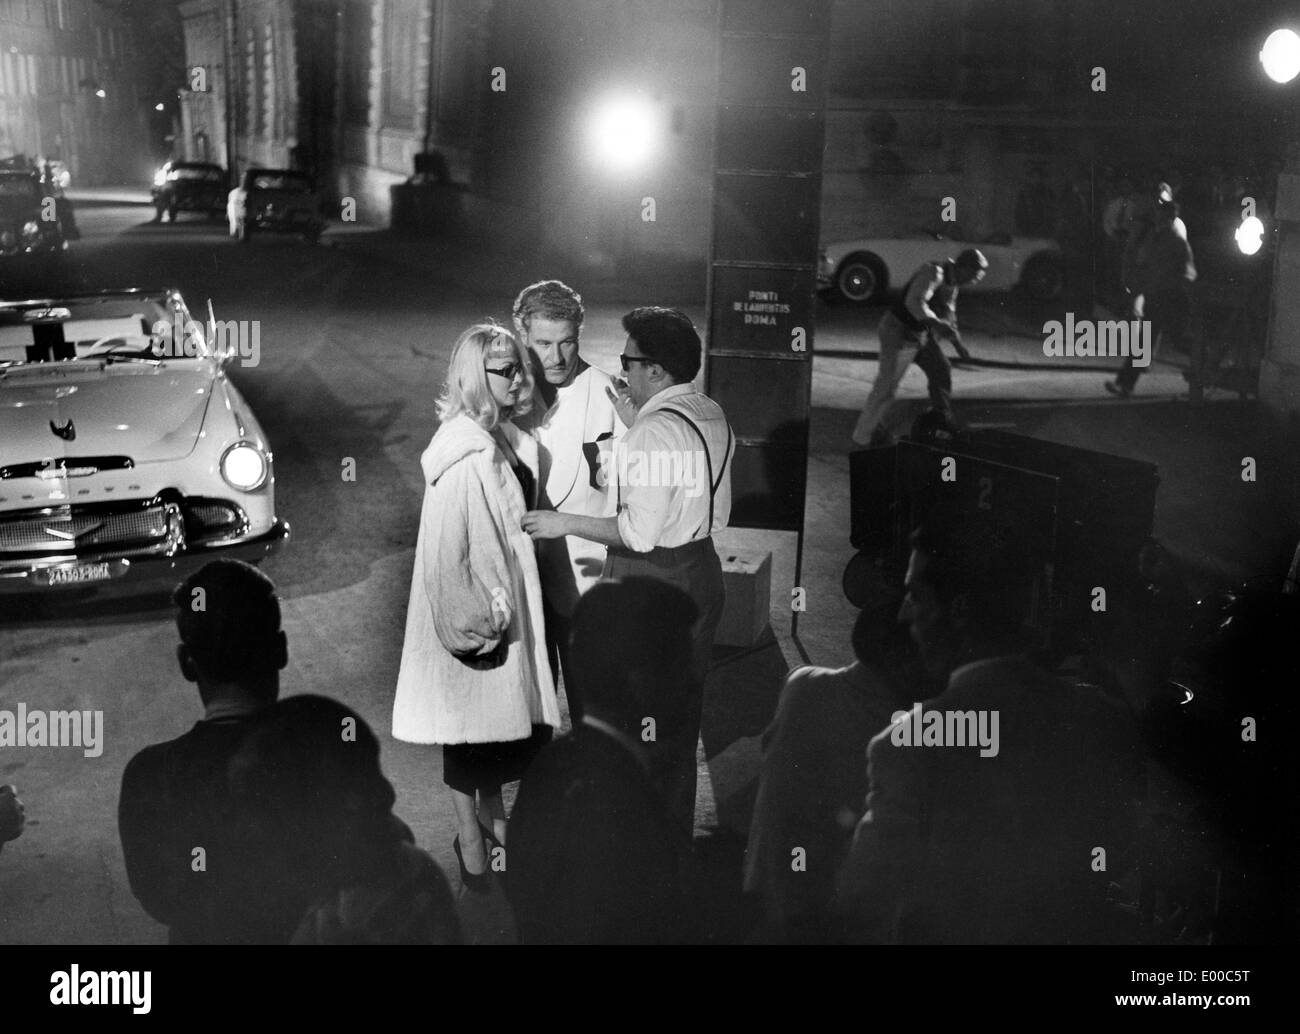 1960 italy director immagini e fotografie stock ad alta risoluzione - Alamy